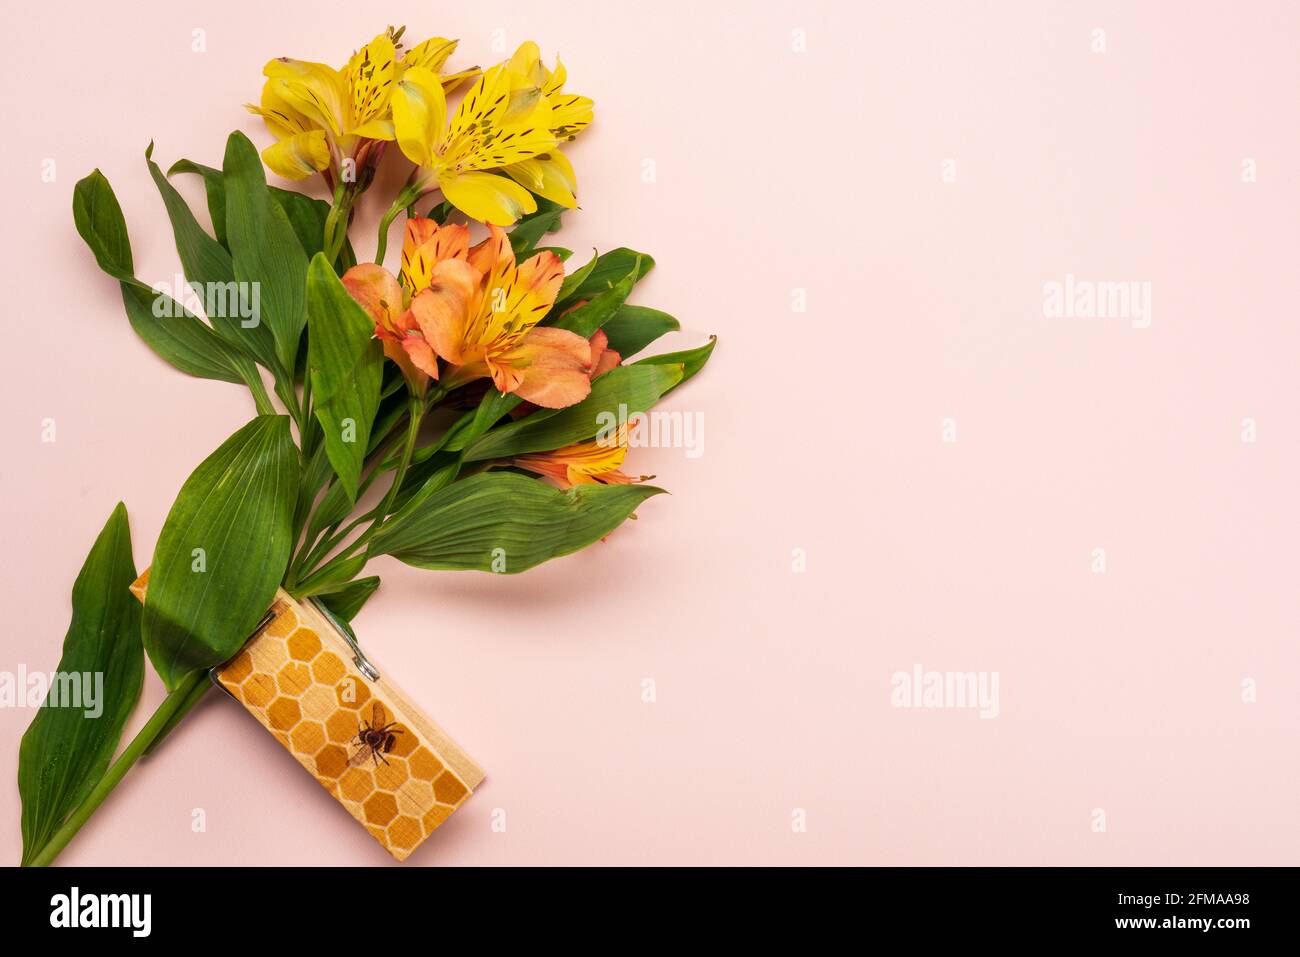 Bouquet estivo con Alstroemeria in giallo e arancio tenuto da una grande clip in legno stampata con un'ape e un nido d'ape pattern su un pallido rosa peloso b Foto Stock